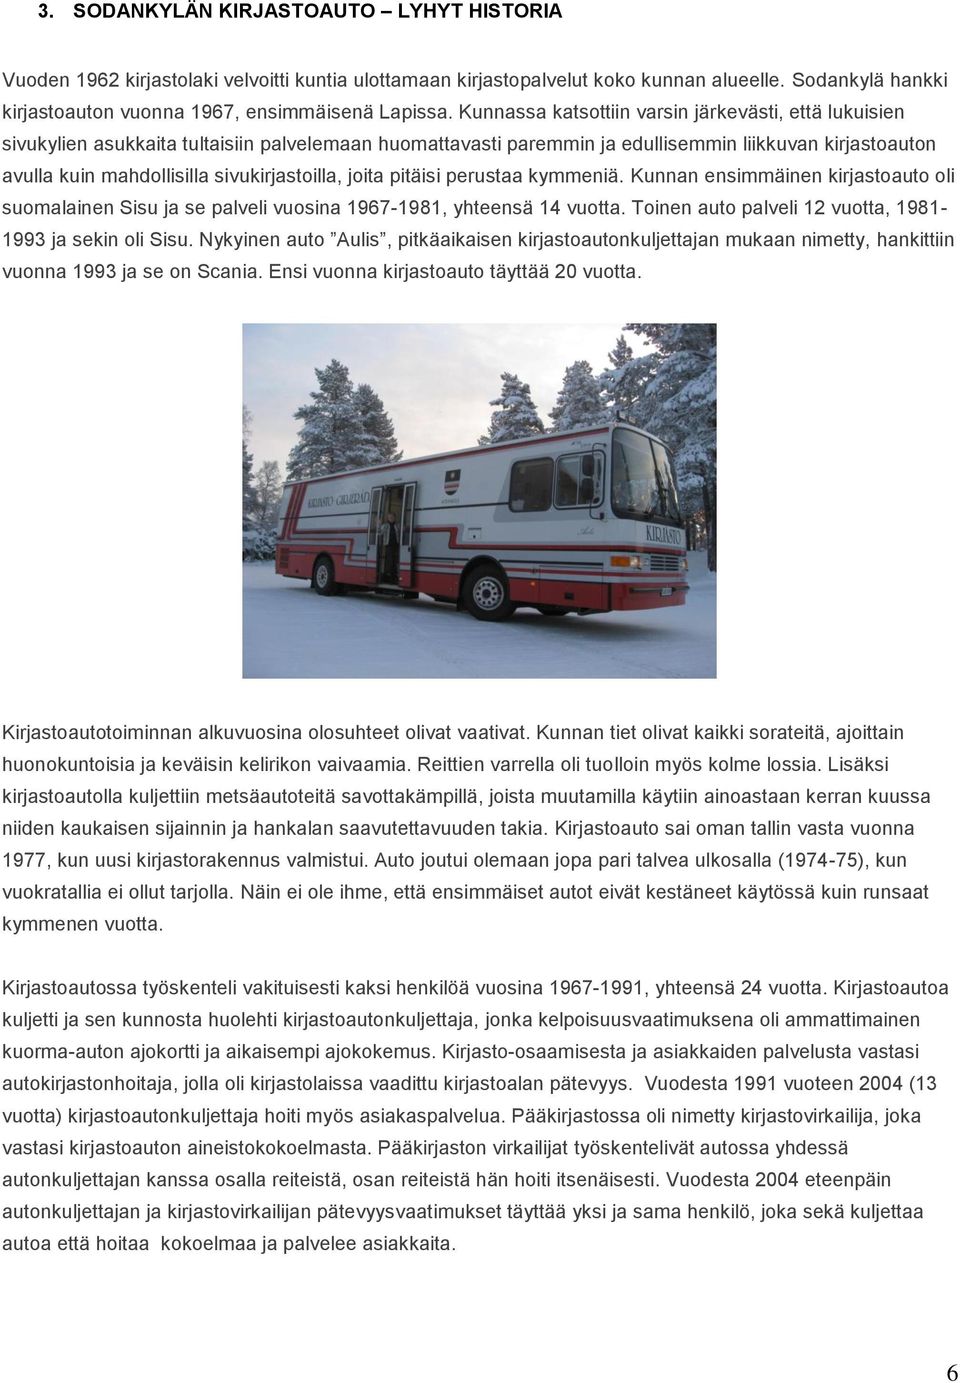 sivukirjastoilla, joita pitäisi perustaa kymmeniä. Kunnan ensimmäinen kirjastoauto oli suomalainen Sisu ja se palveli vuosina 1967-1981, yhteensä 14 vuotta.